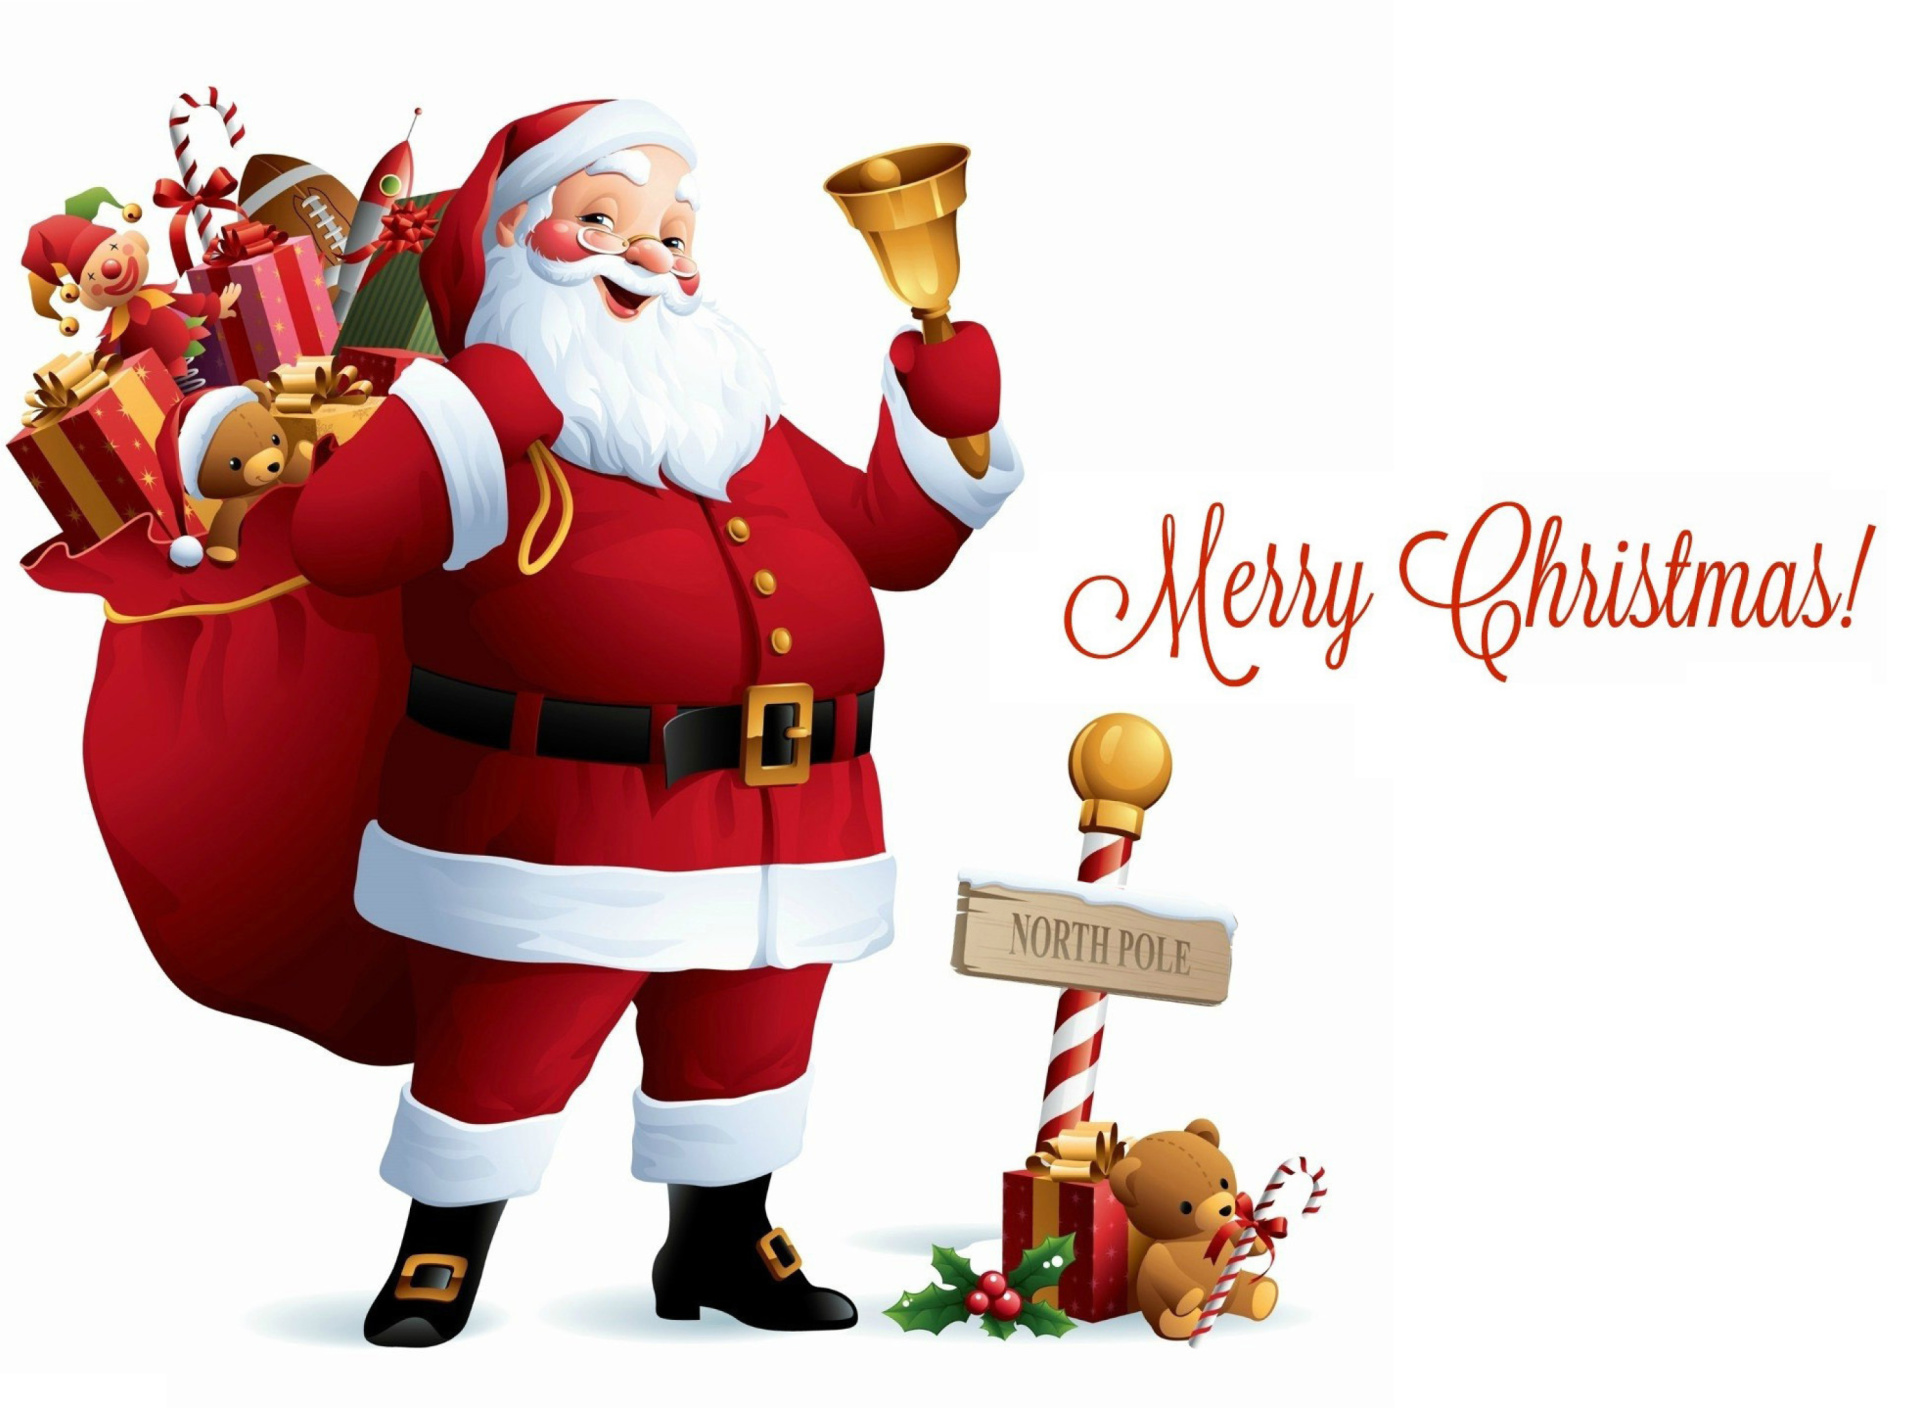 HO HO HO Merry Christmas Santa Claus wallpaper 1920x1408